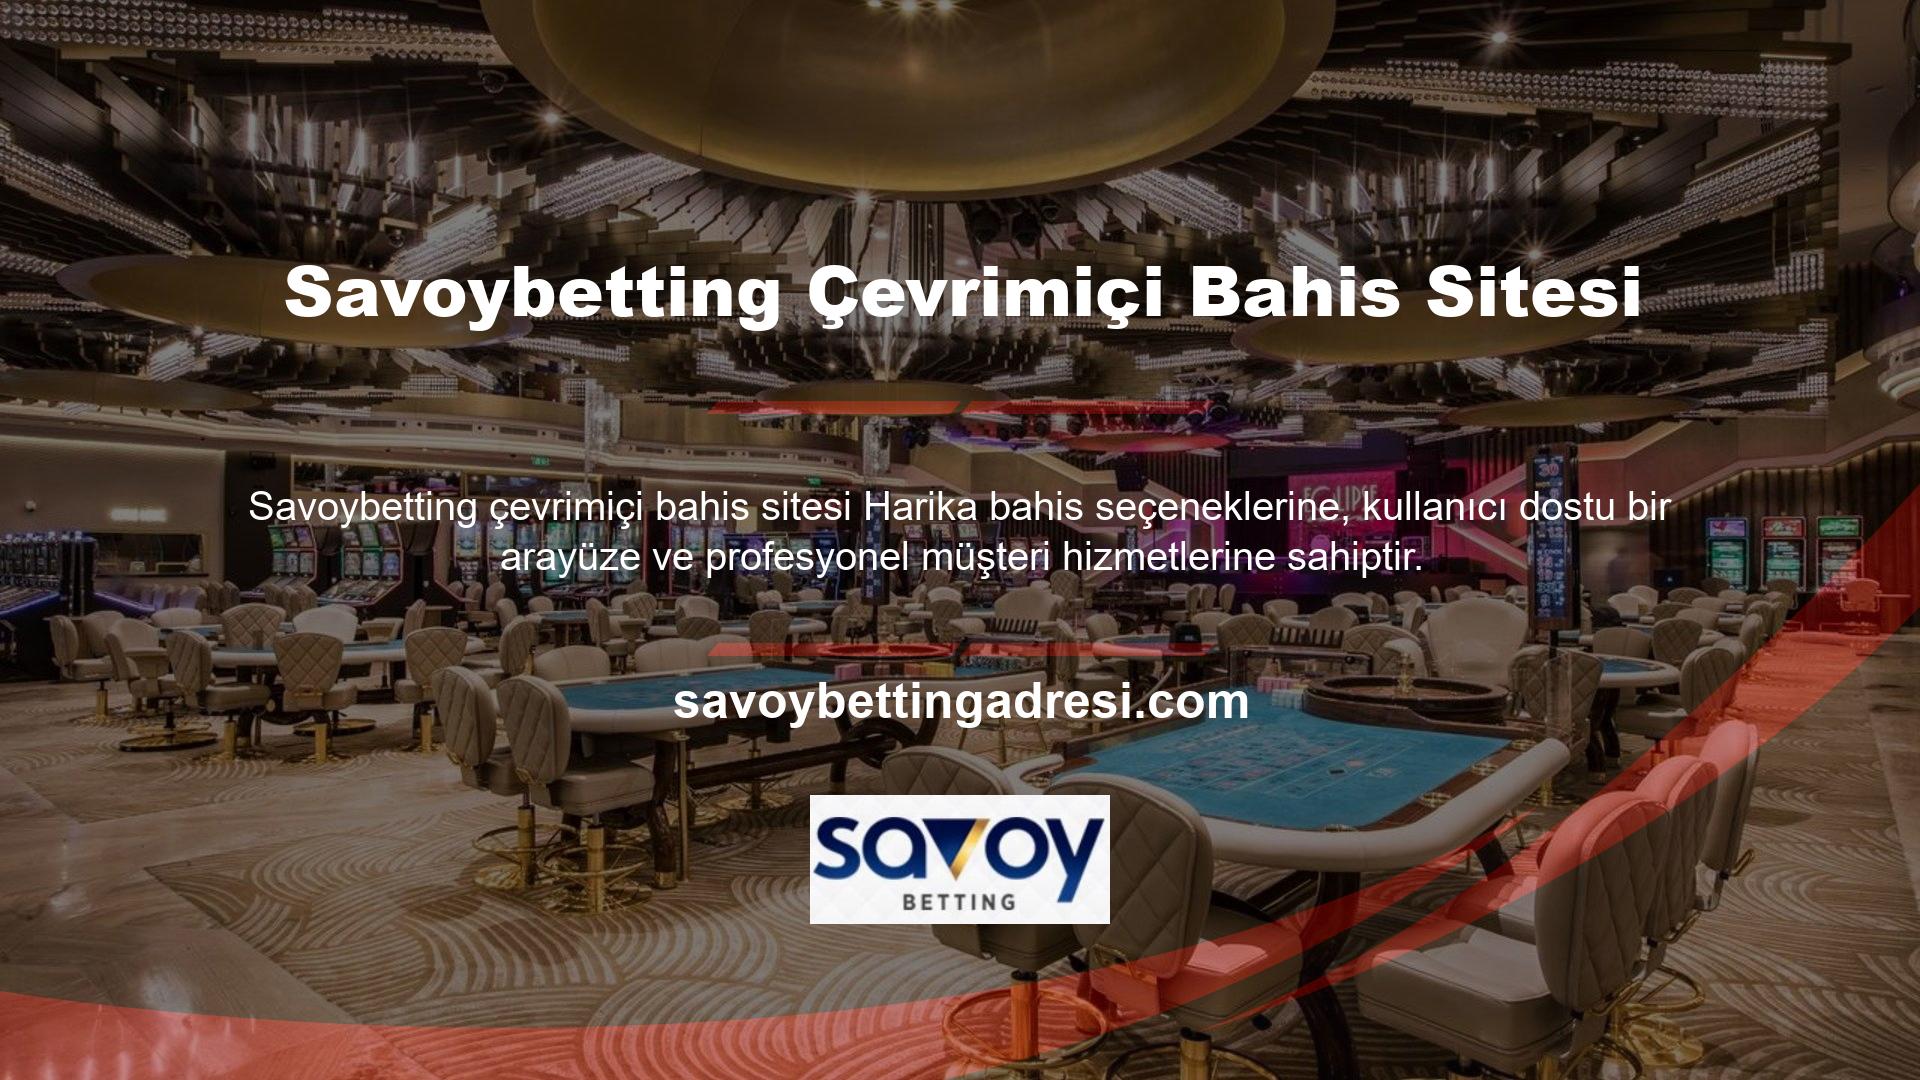 Savoybetting, sektördeki en yeni çevrimiçi bahis ve casino sitelerinden biridir